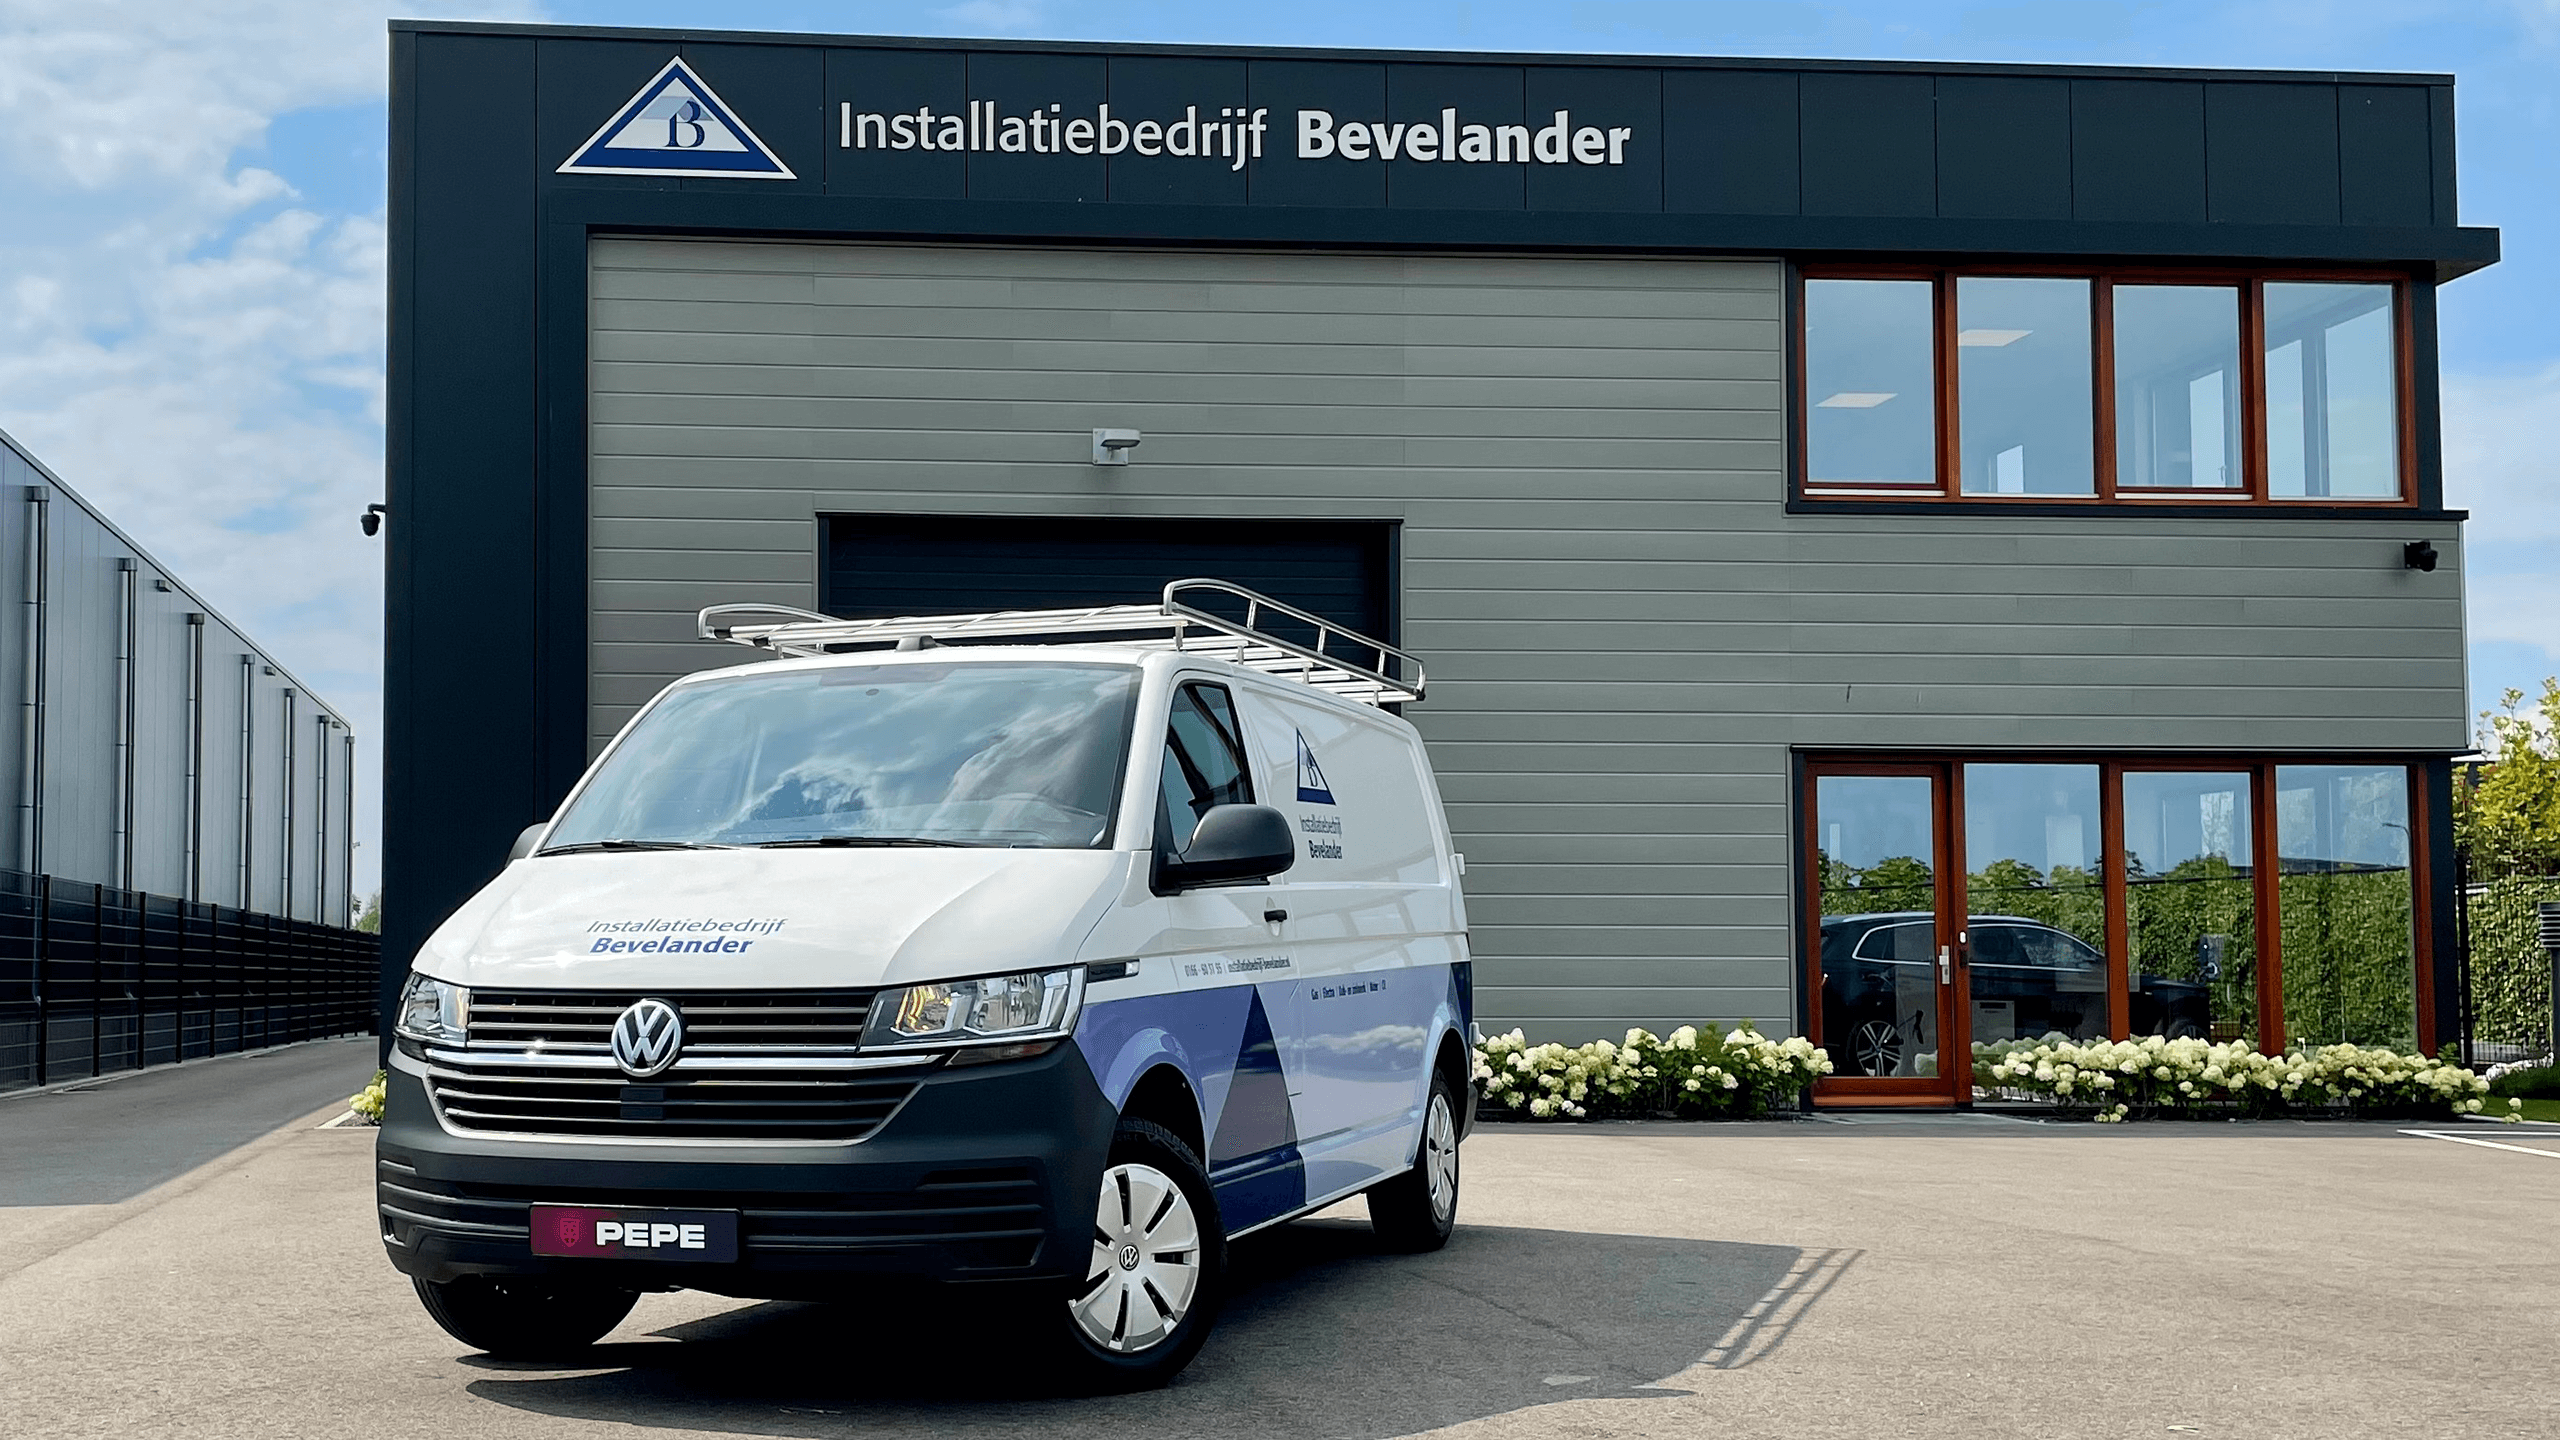 Moderne en stijlvolle Bevelander bedrijfswagens voor zakelijke doeleinden van PEPE Wagenparkbeheer in omgeving Roosendaal